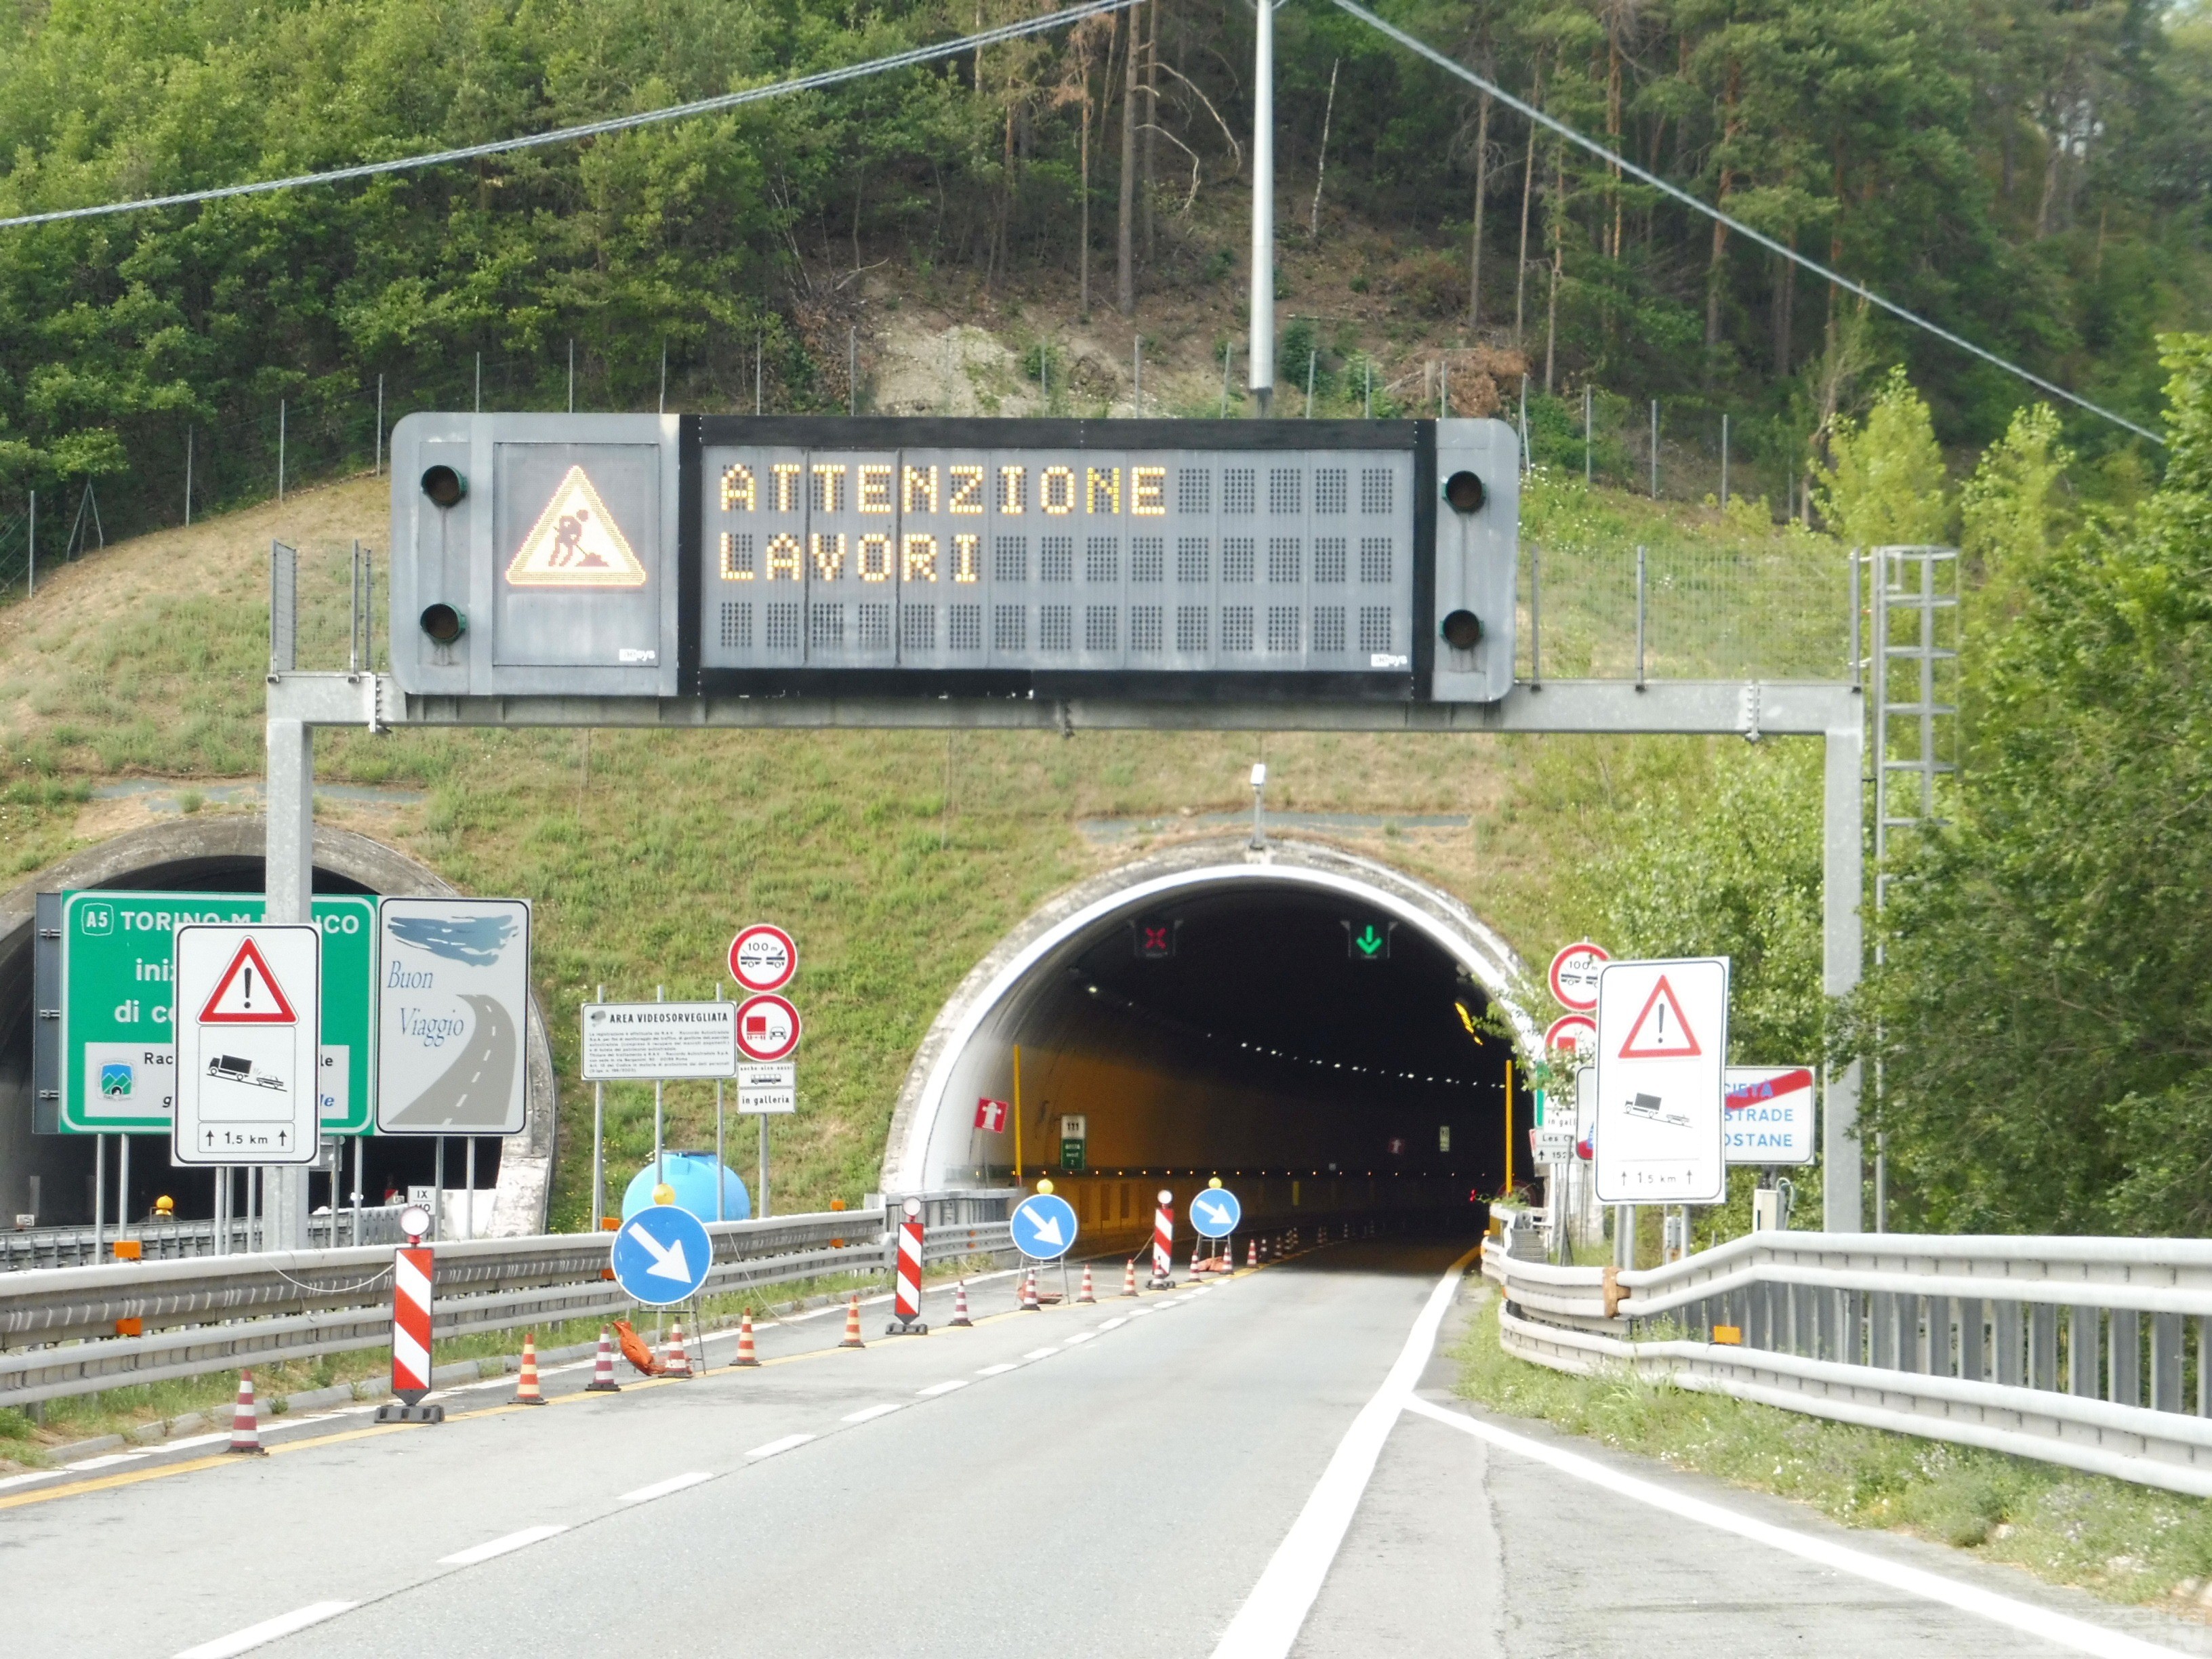 Viabilità: chiude il tratto autostradale dell’A5 tra Aosta e Saint-Pierre